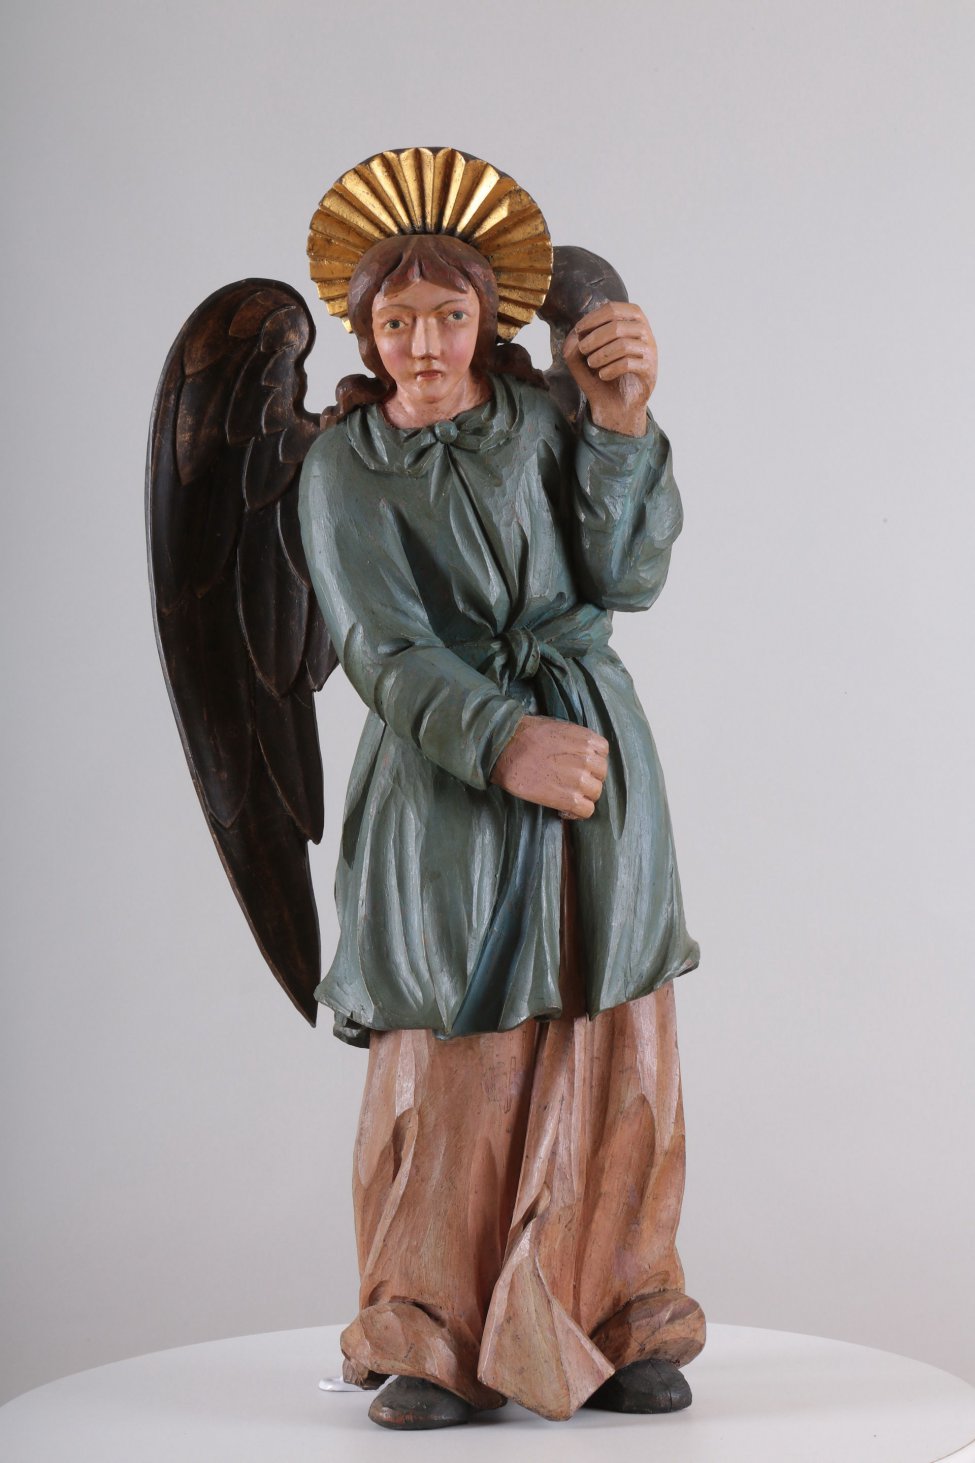 У ангела верхняя одежда синевато-зеленого цвета, нижняя - сиреневого цвета. Сзади находится два отдельно вырезанных позолоченных крыла. Правая рука опущена, а левая - поднята.